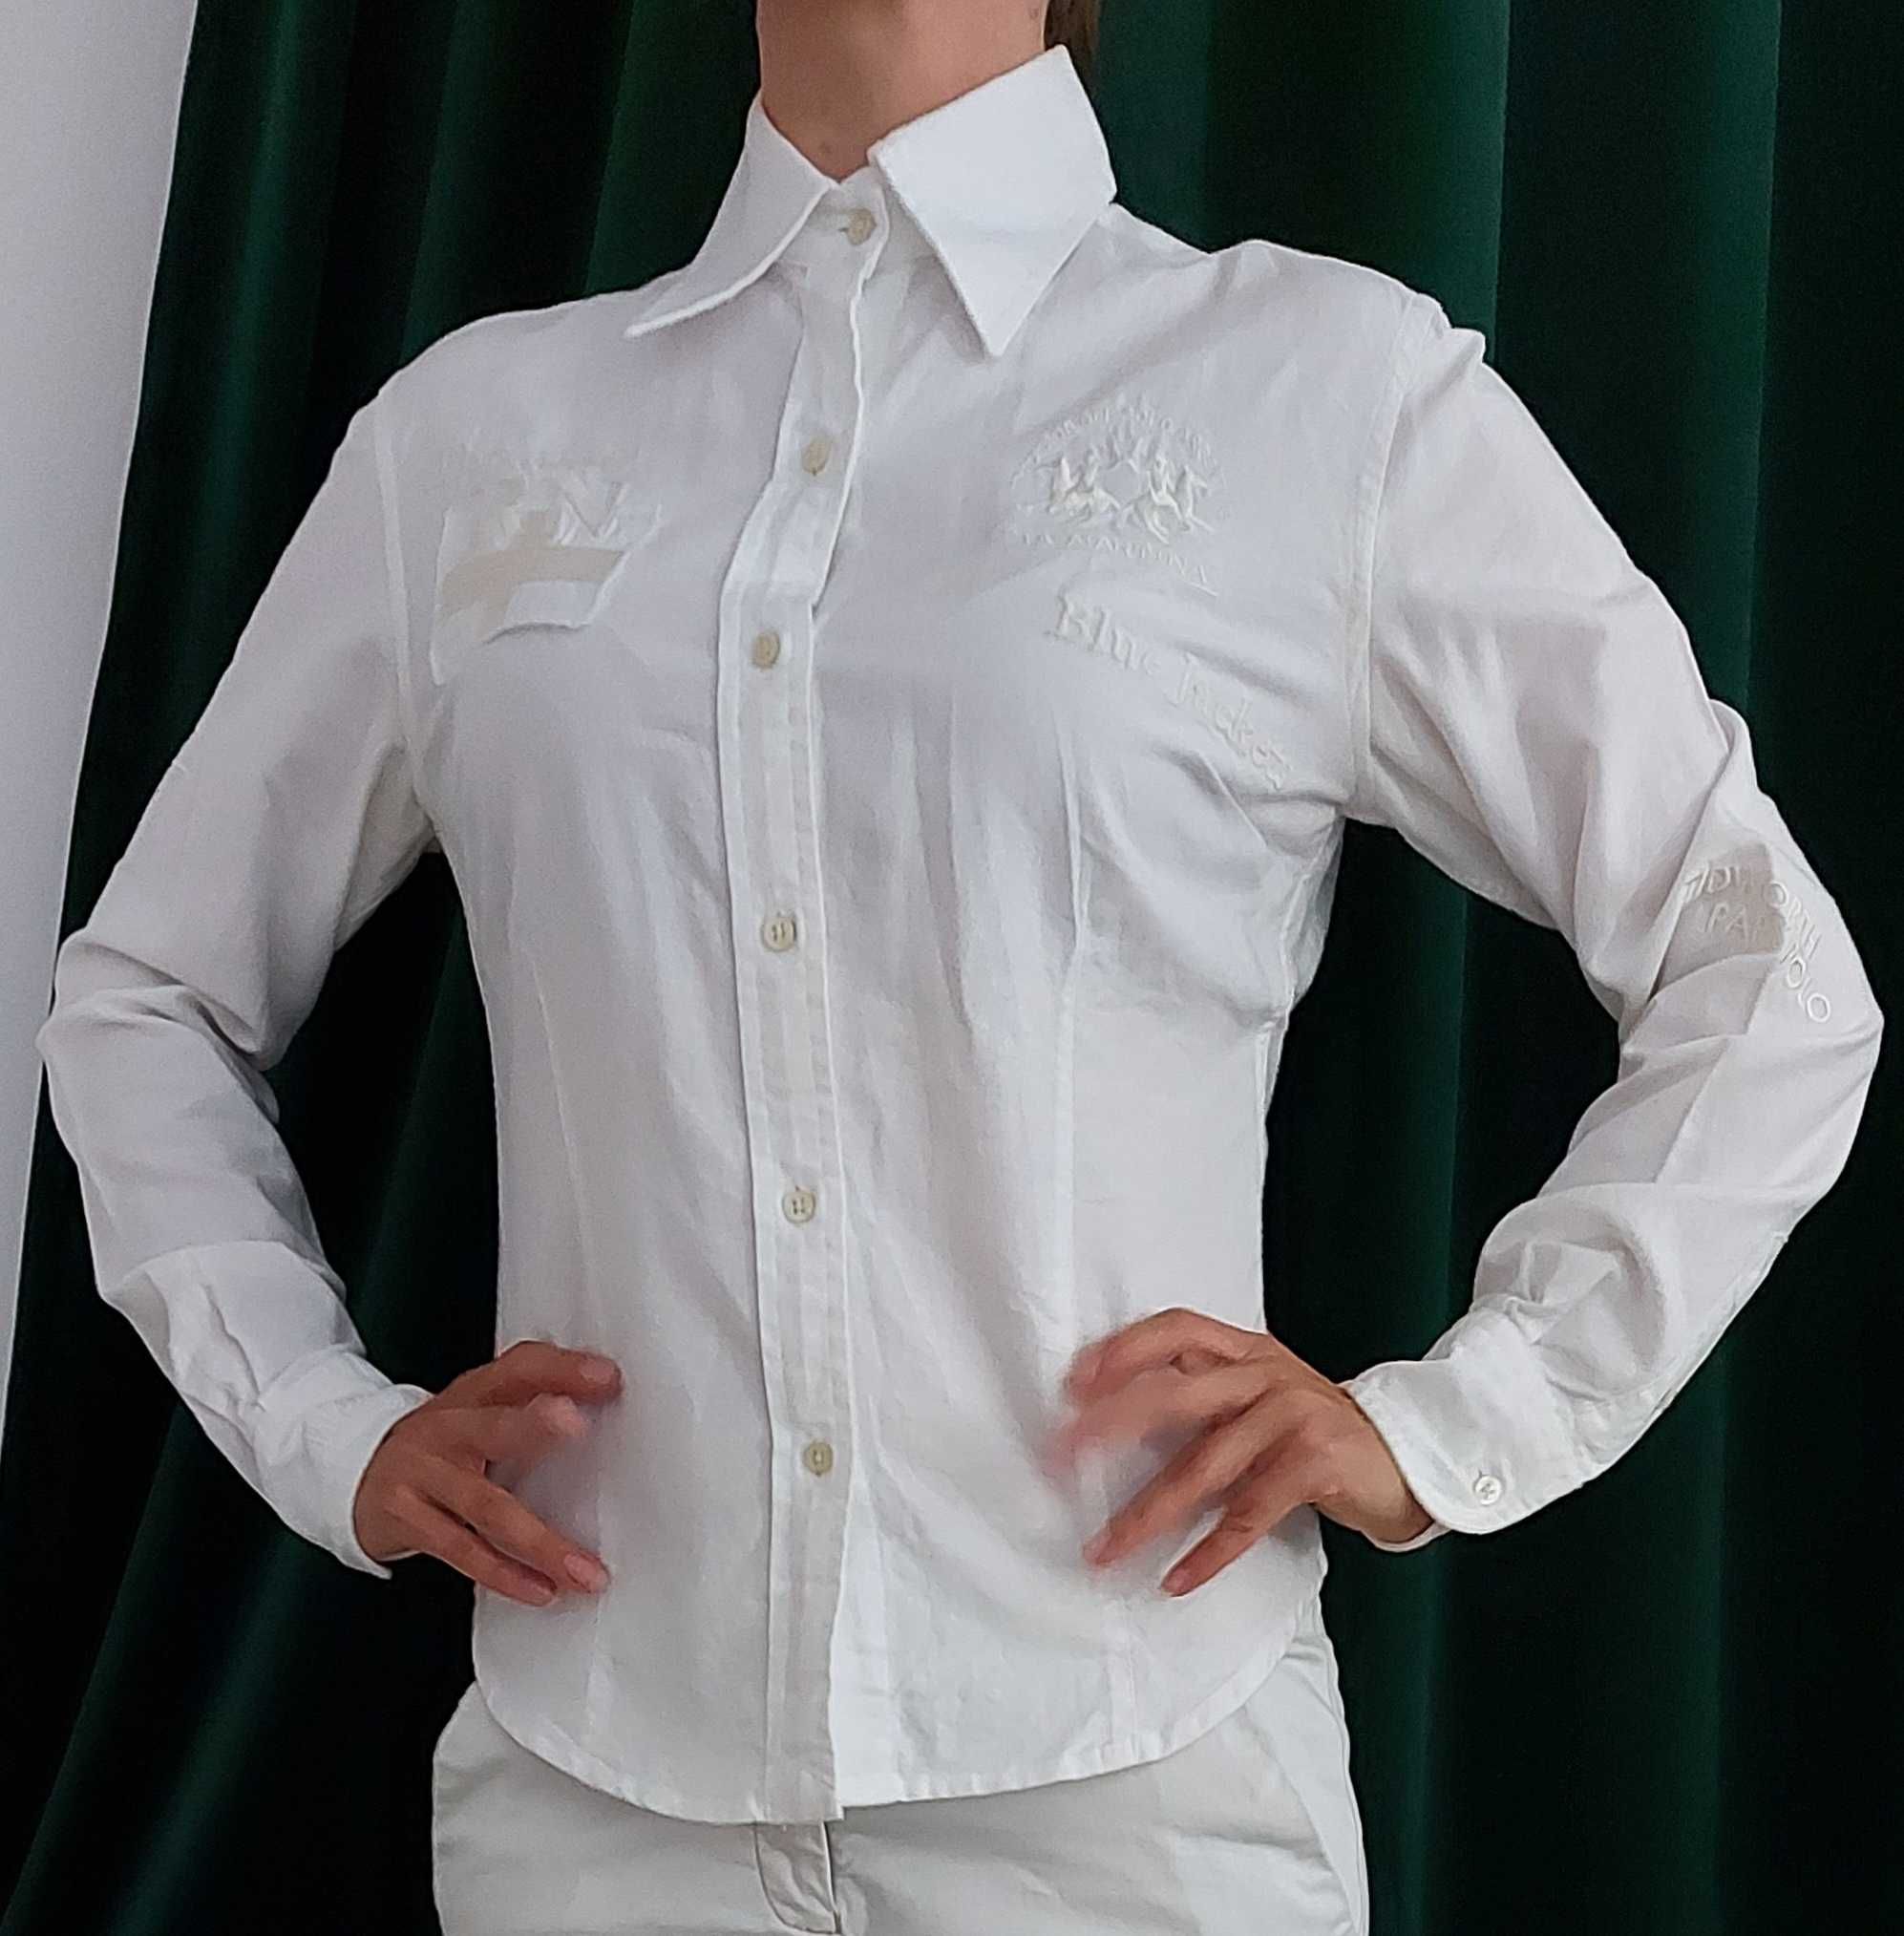 S biała koszula konkursowa polo jeździecka